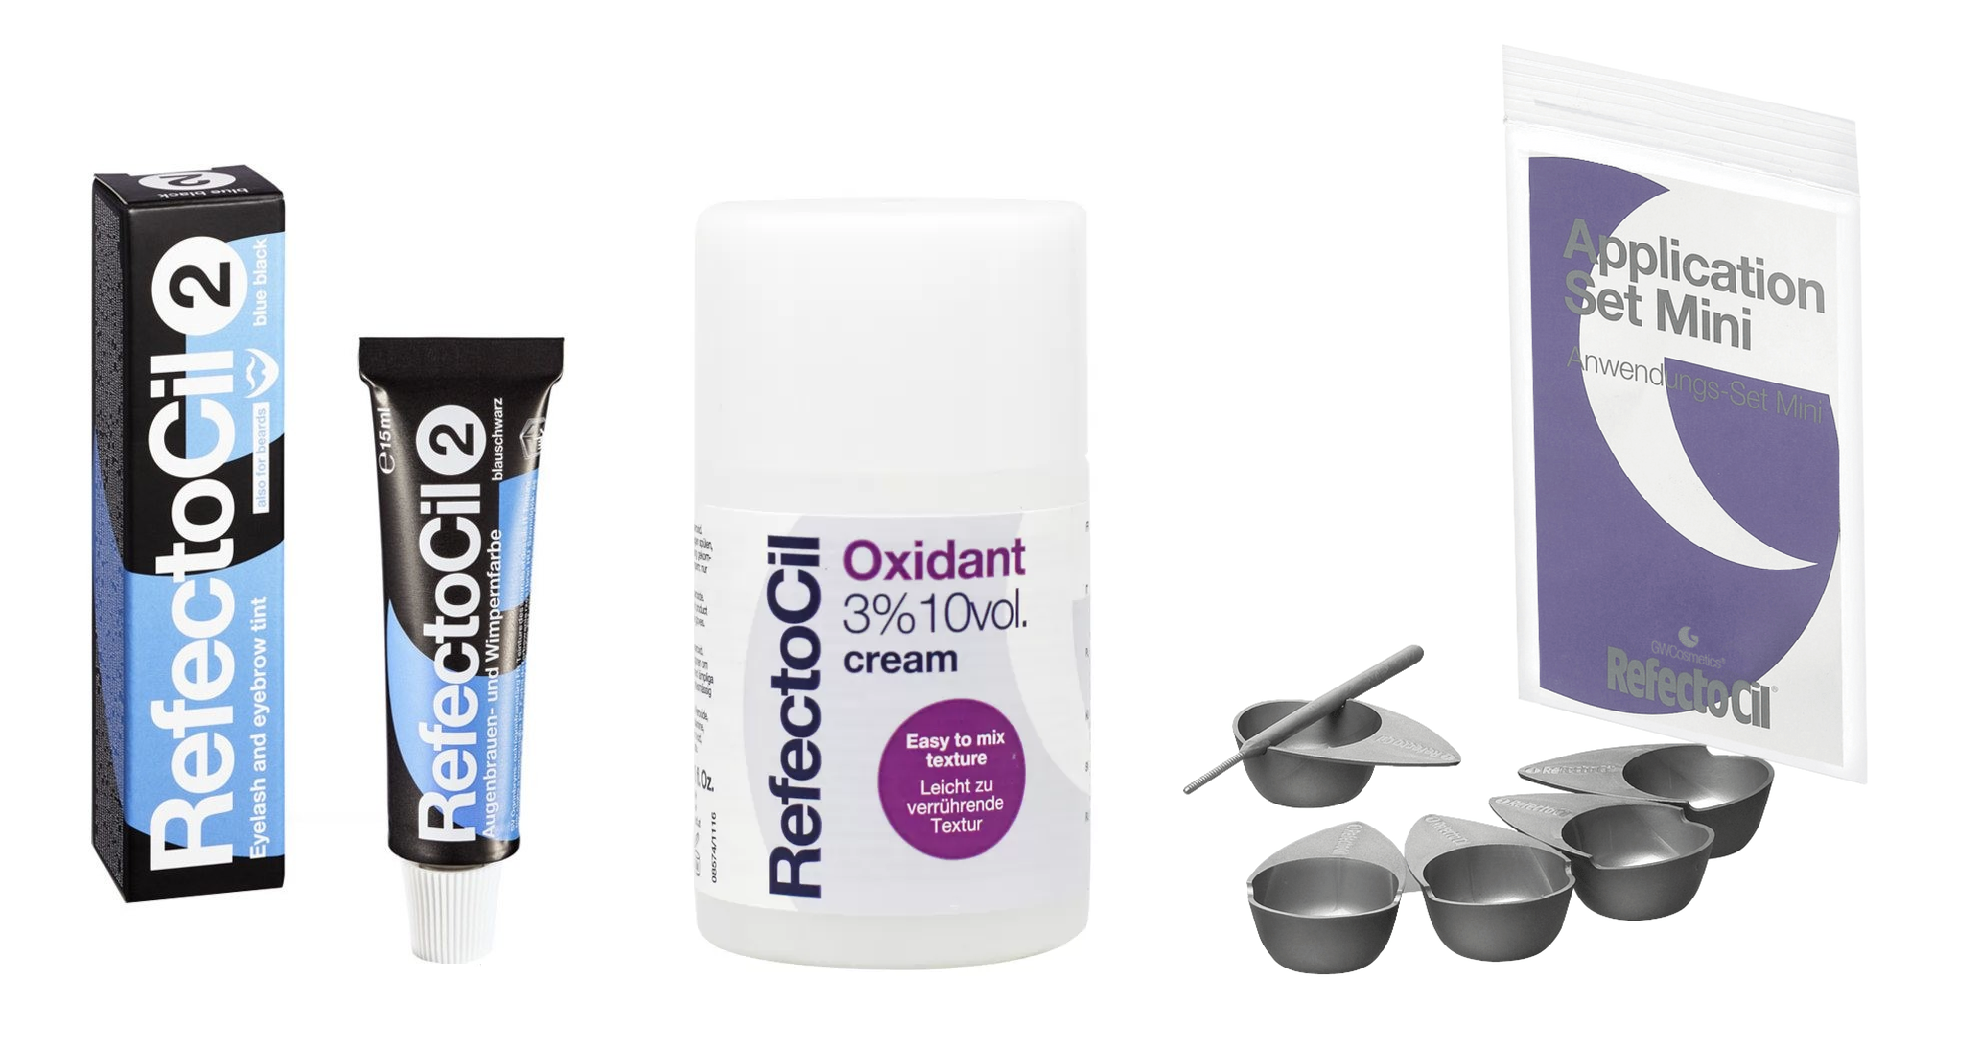 RefectoCil - Eyelash and Eyebrow Color Blue Black 2 + RefectoCil - Oxidant cream 3%, 100 ml + RefectoCil - Application Set Mini